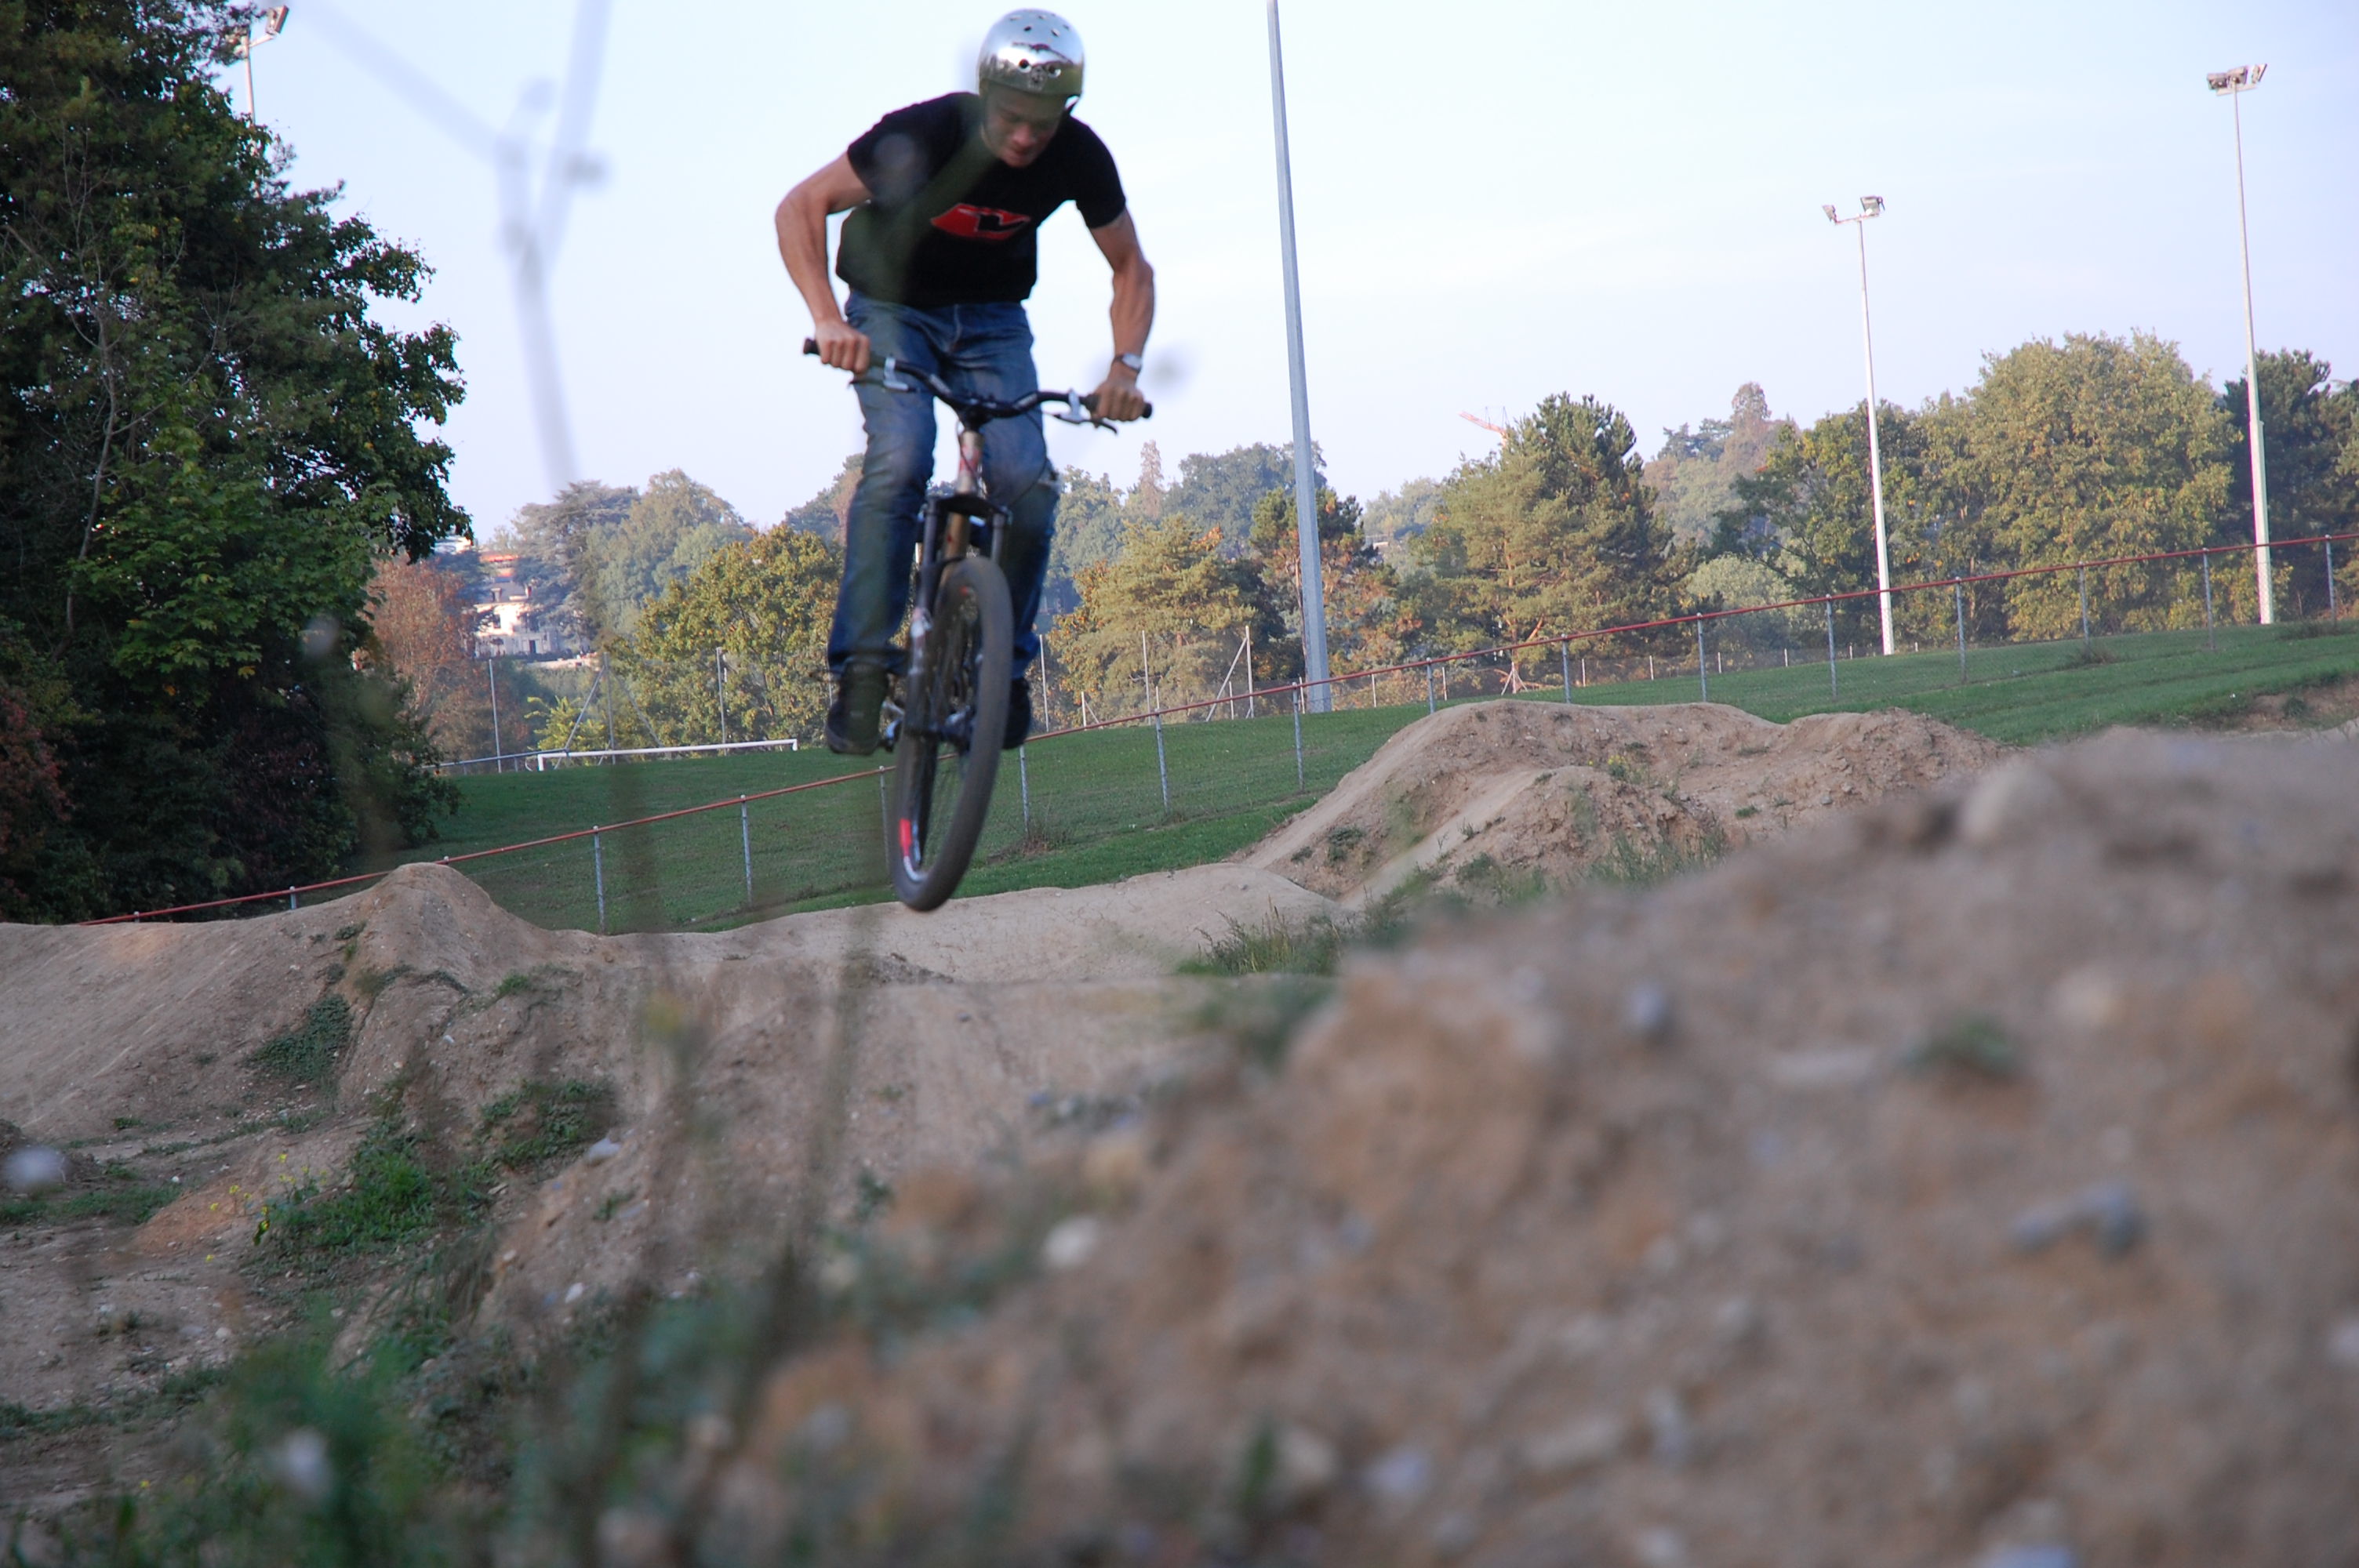 DIrt jump @ Vessy - Geneva